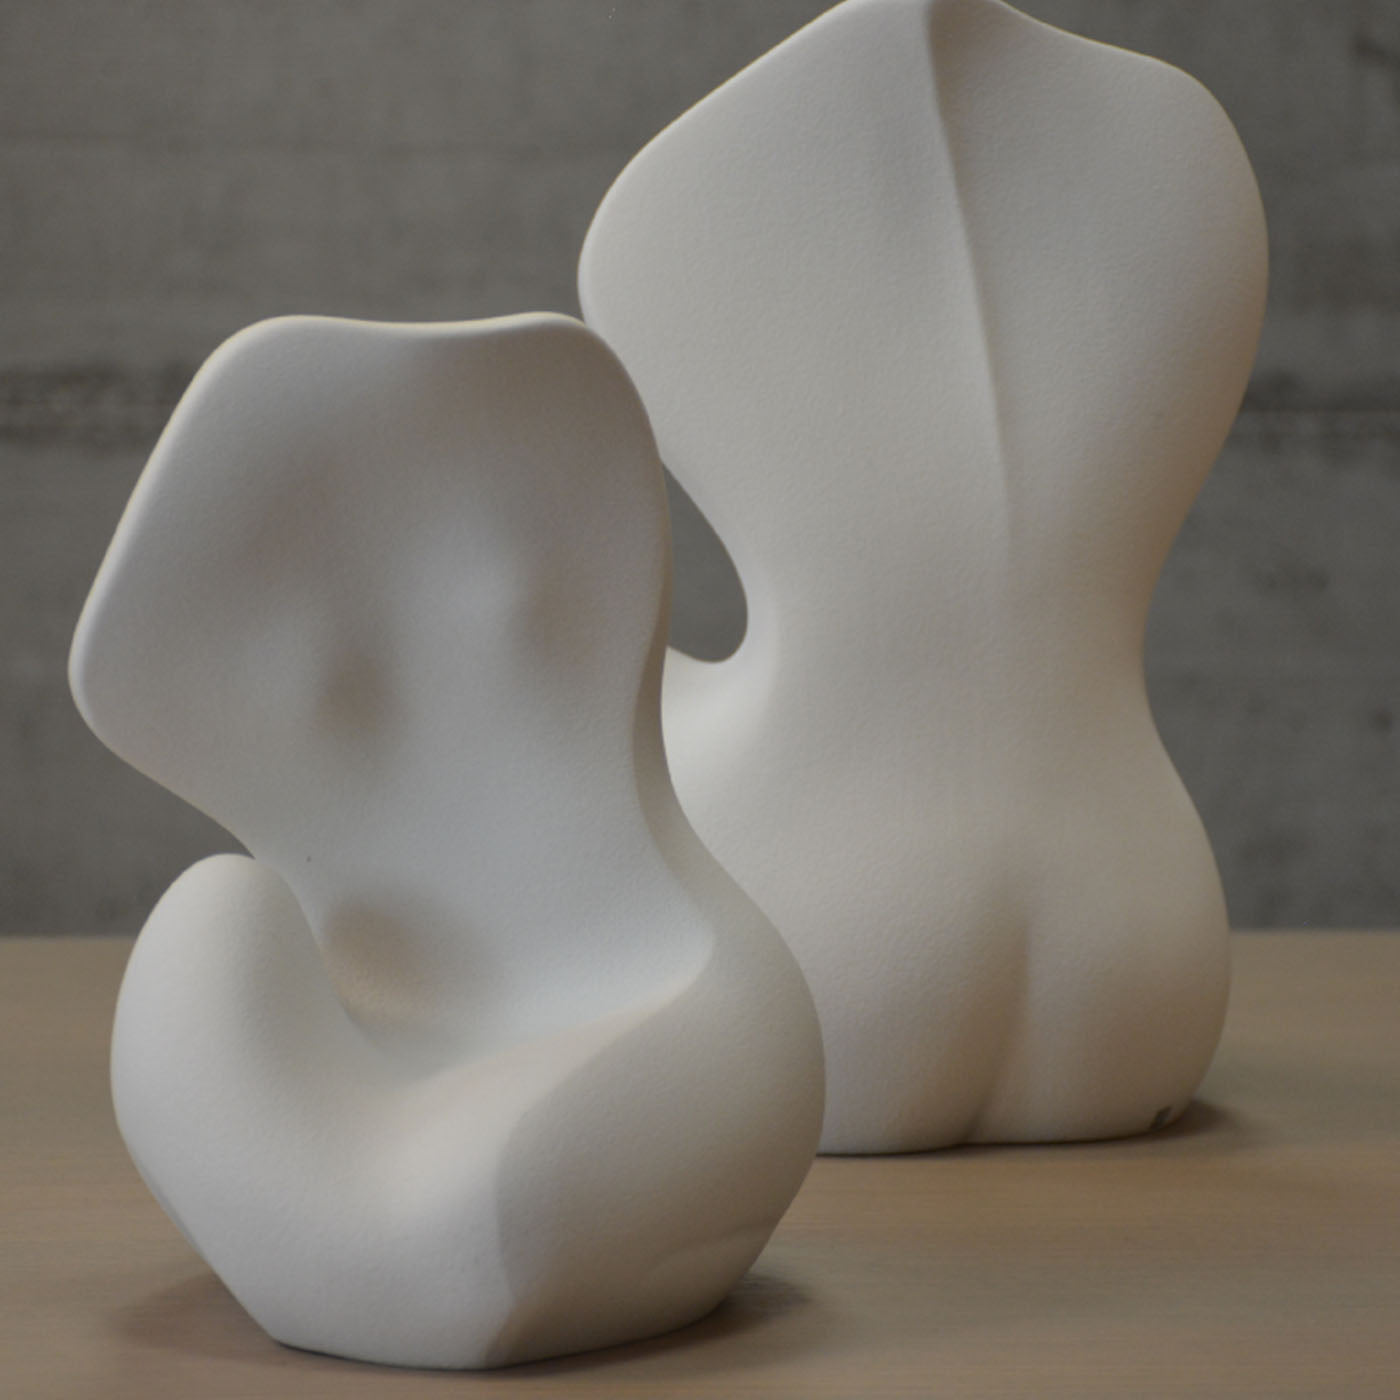 Set of 2 Augusta Anthropomorphic Ceramic Sculptures - Alternative view 2